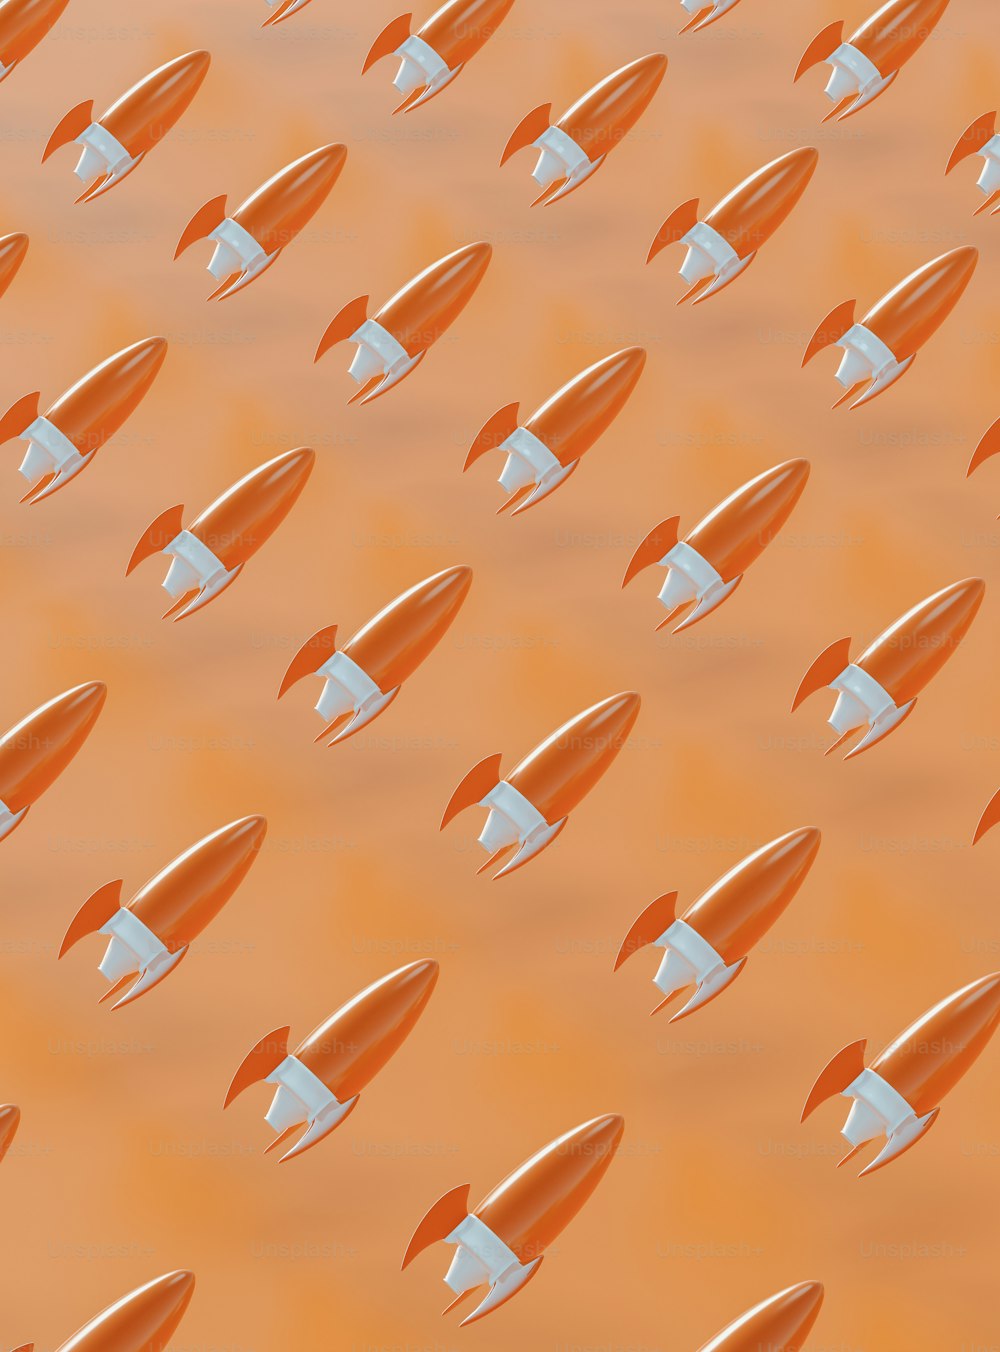 Eine Gruppe orangefarbener und weißer Raketen fliegt durch die Luft